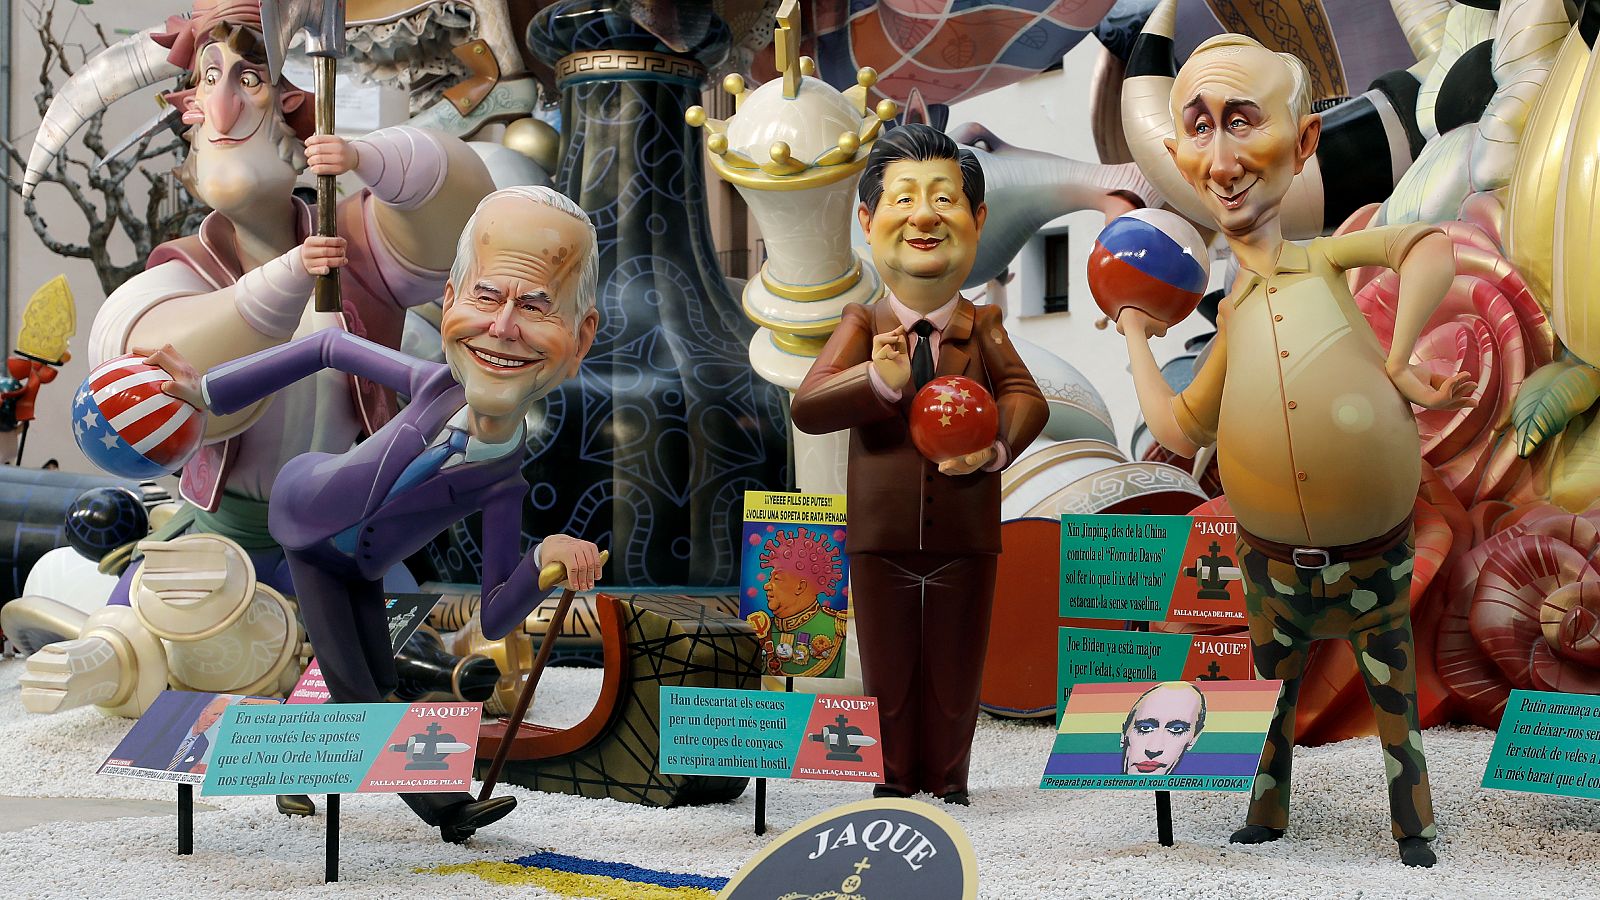 Vladimir Putin, junto a Joe Biden y Xi Jinping, en una escena del monumento de El Pilar